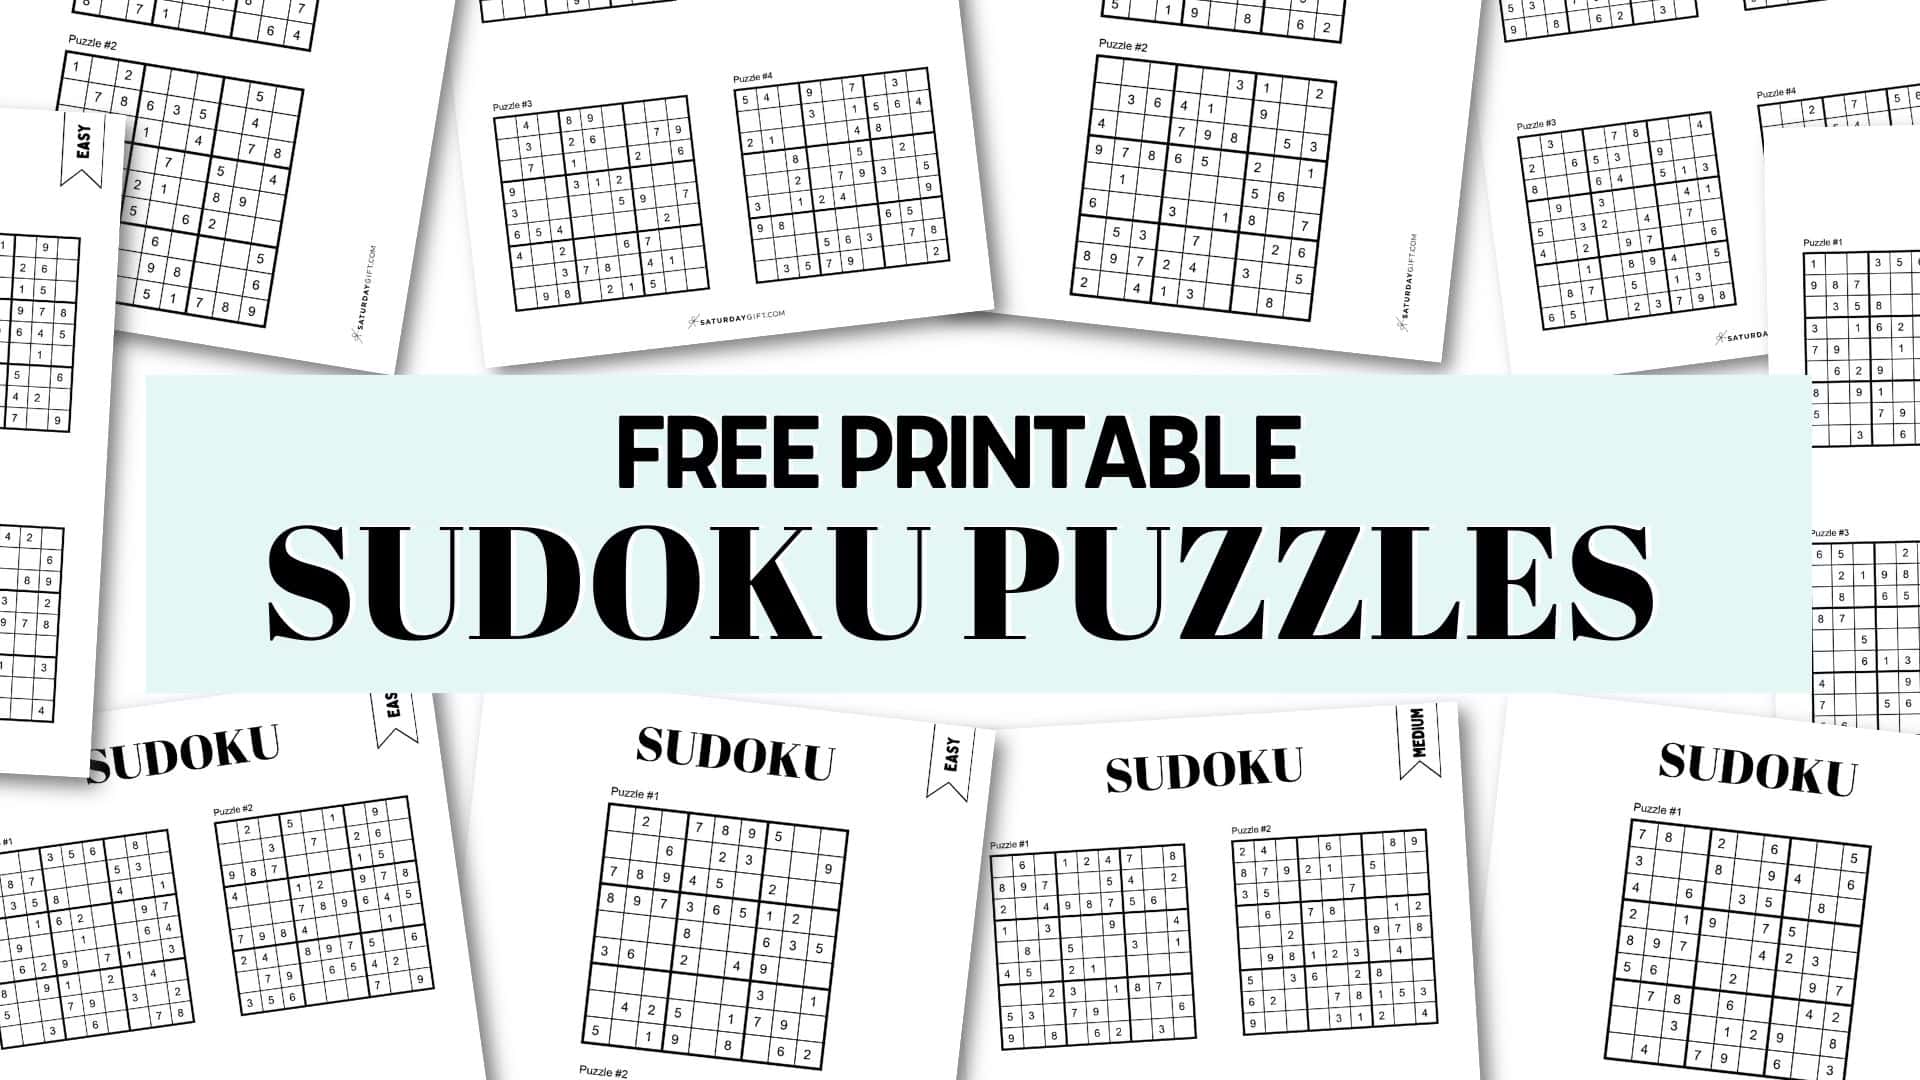 Free printable sudoku puzzles